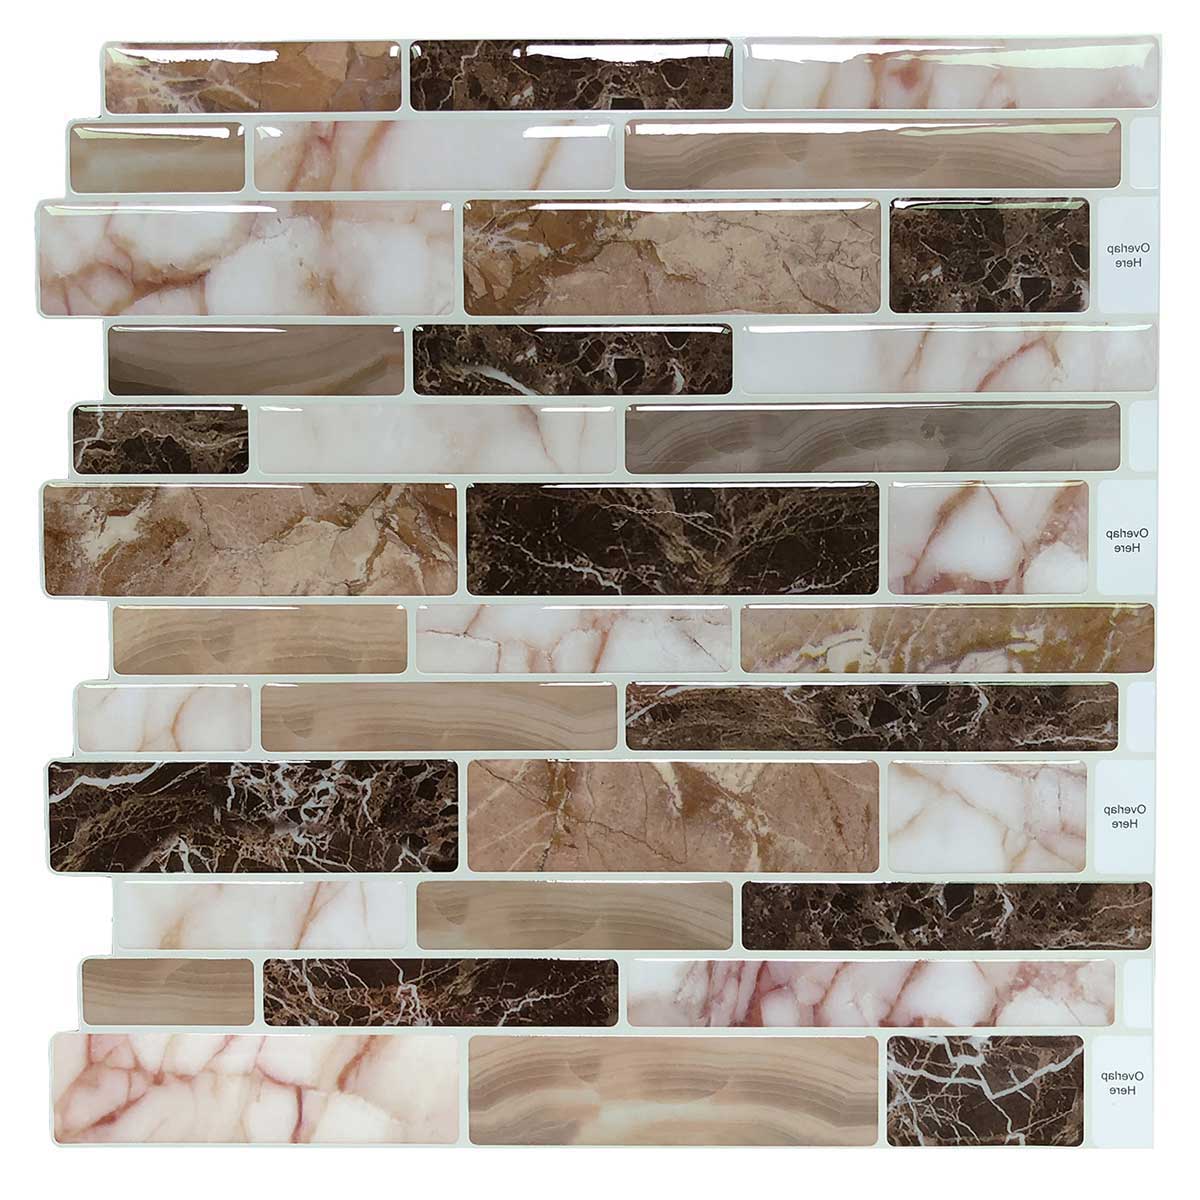 A17072 - 10-Sheet Peel and Stick Tile Backsplash for Kitchen in Marble Design Tile